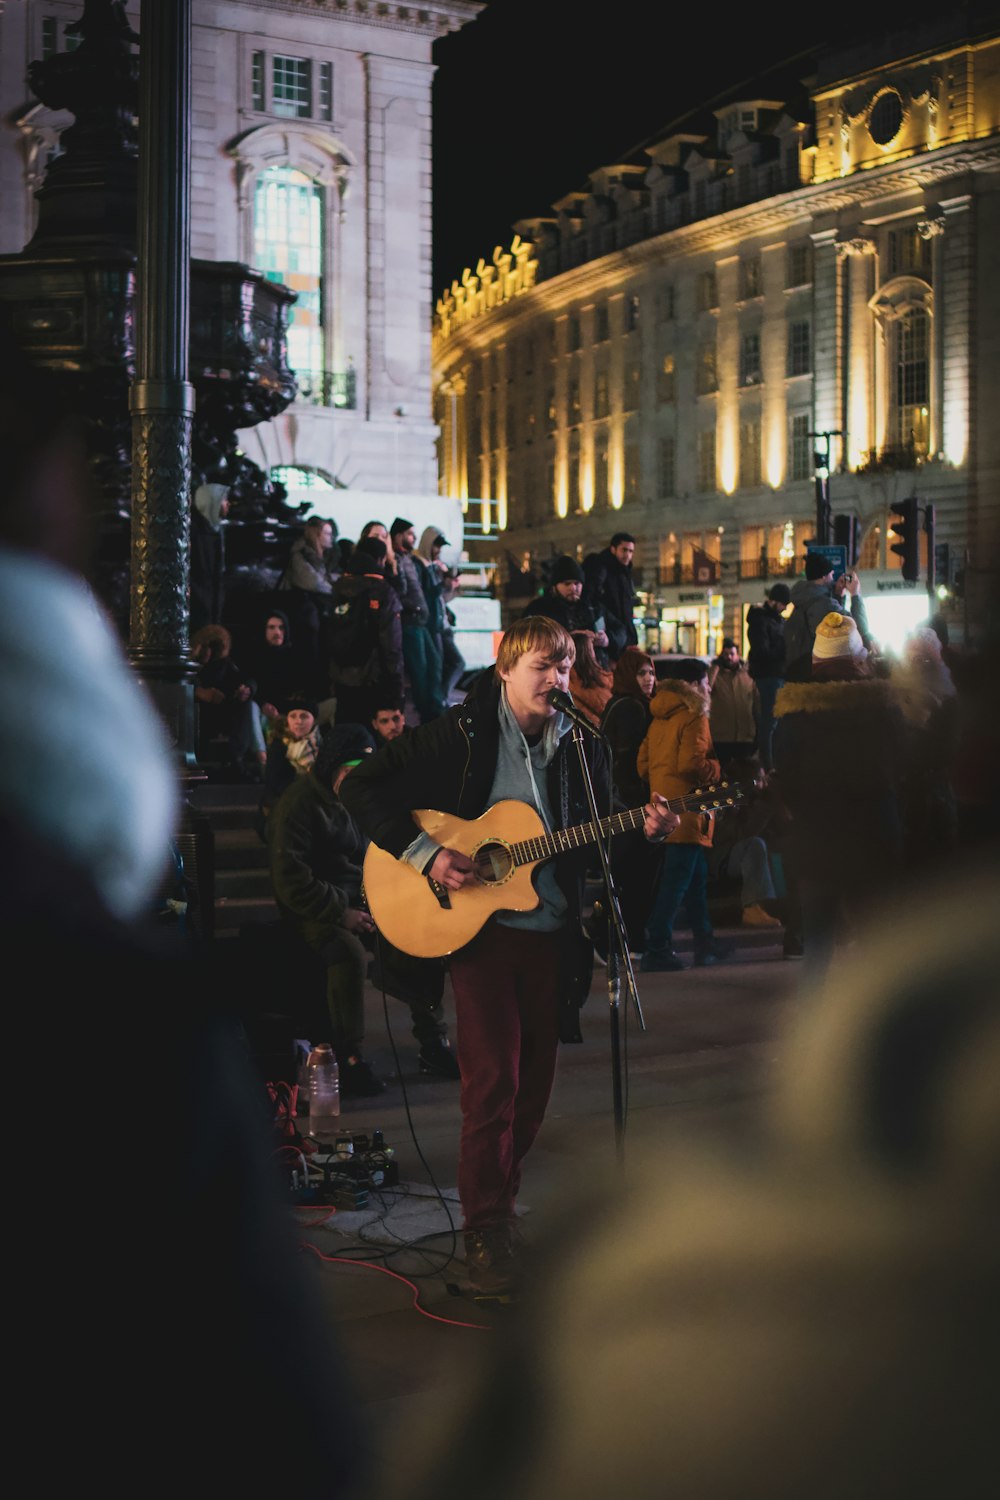 Hombre con camiseta negra tocando la guitarra en la calle durante la noche